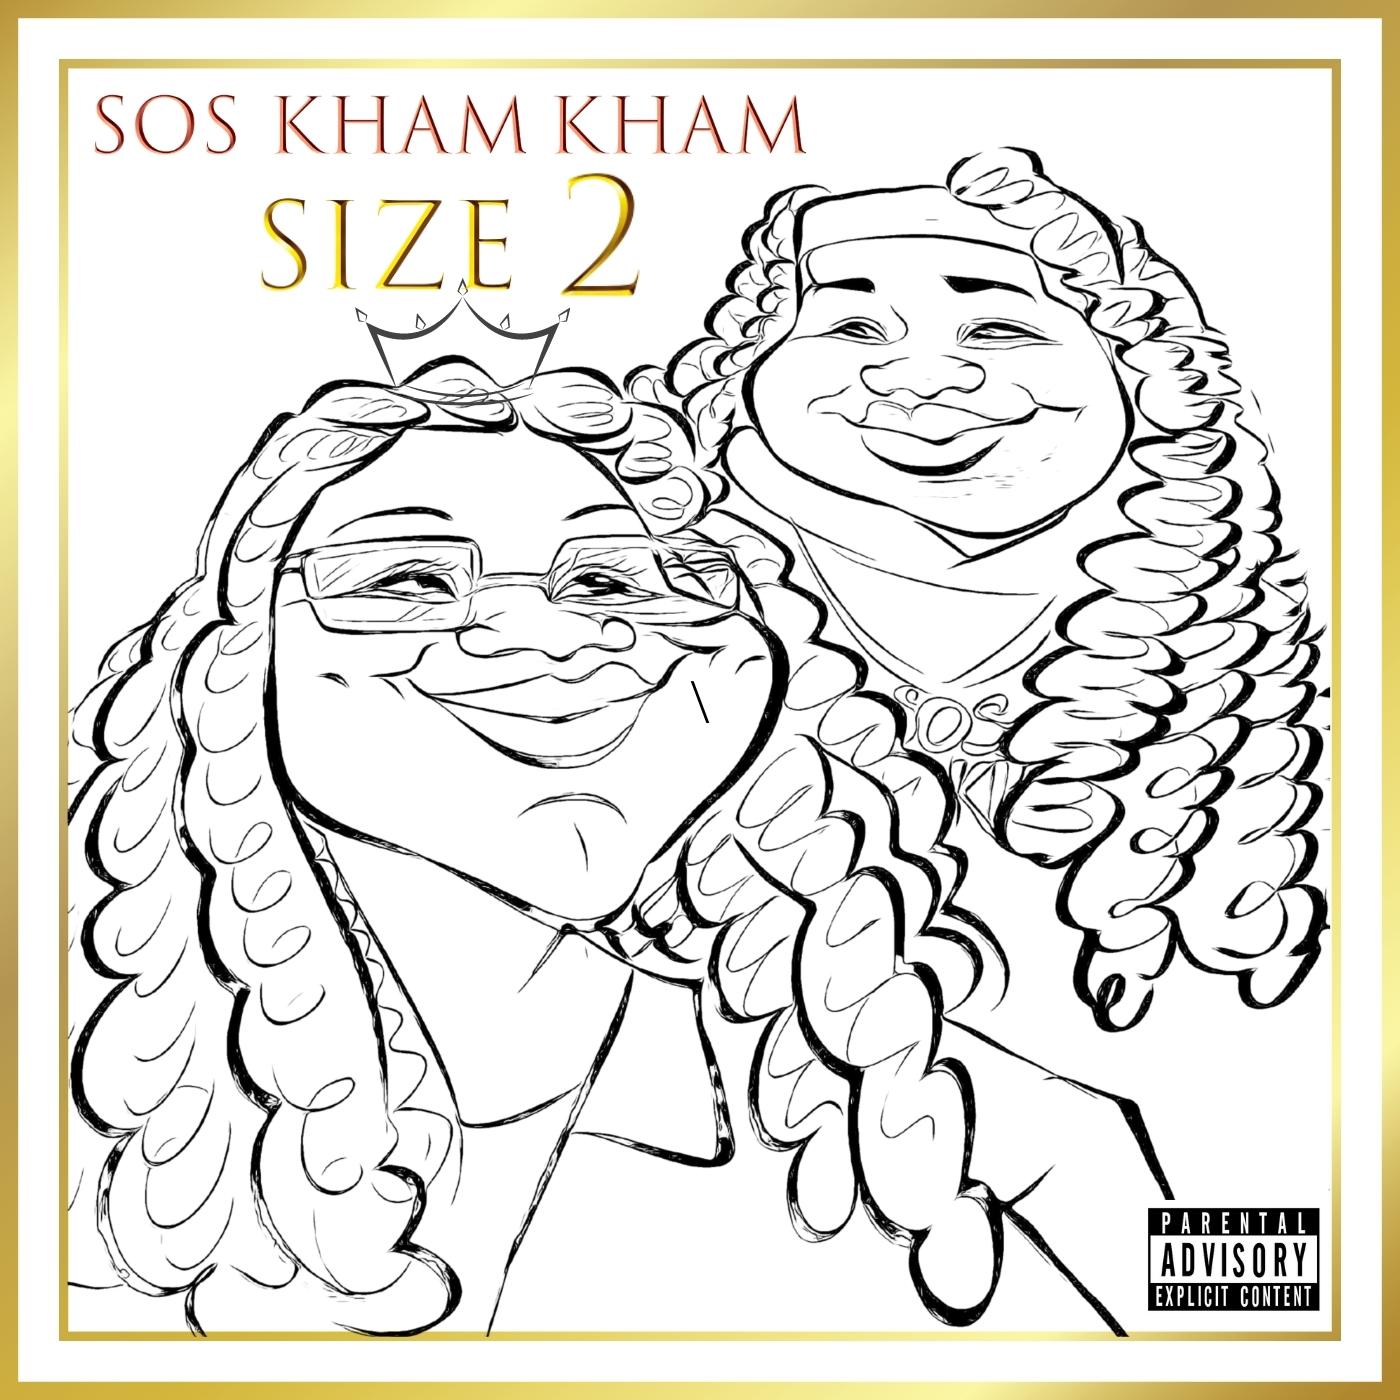 [Single] @soskhamkham ‘Size 2’